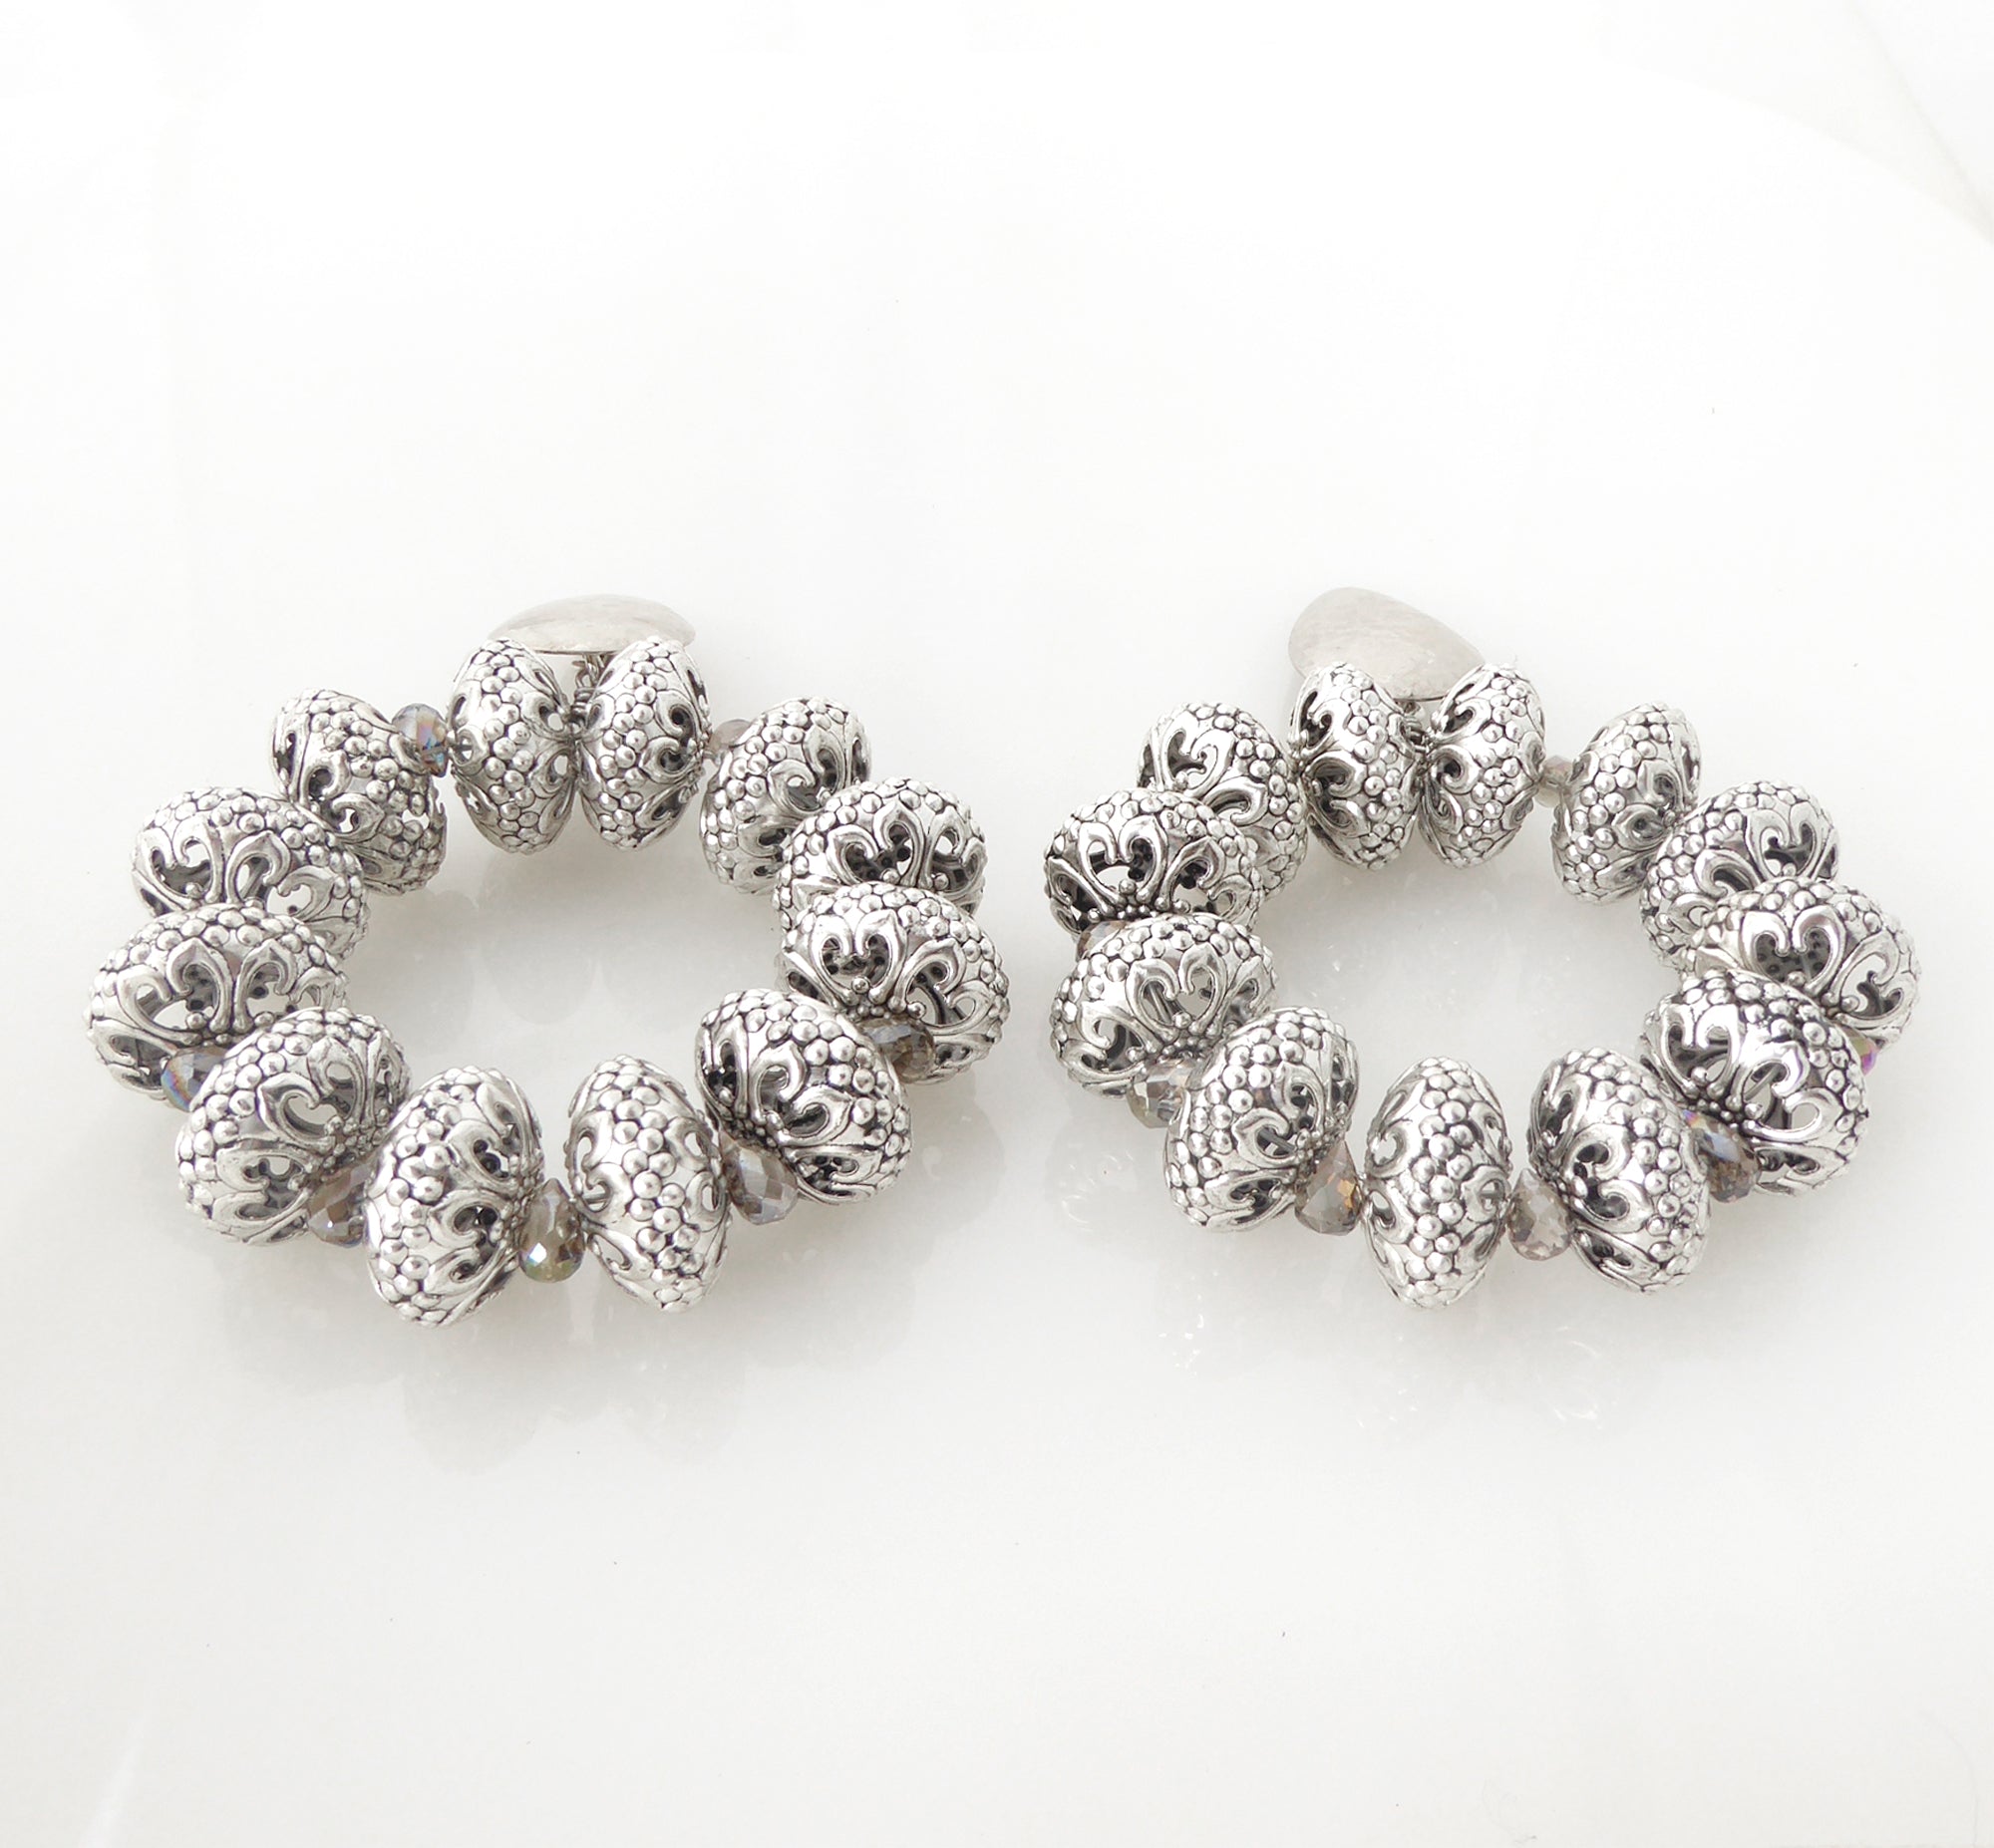 Silver elder earrings by Jenny Dayco 3